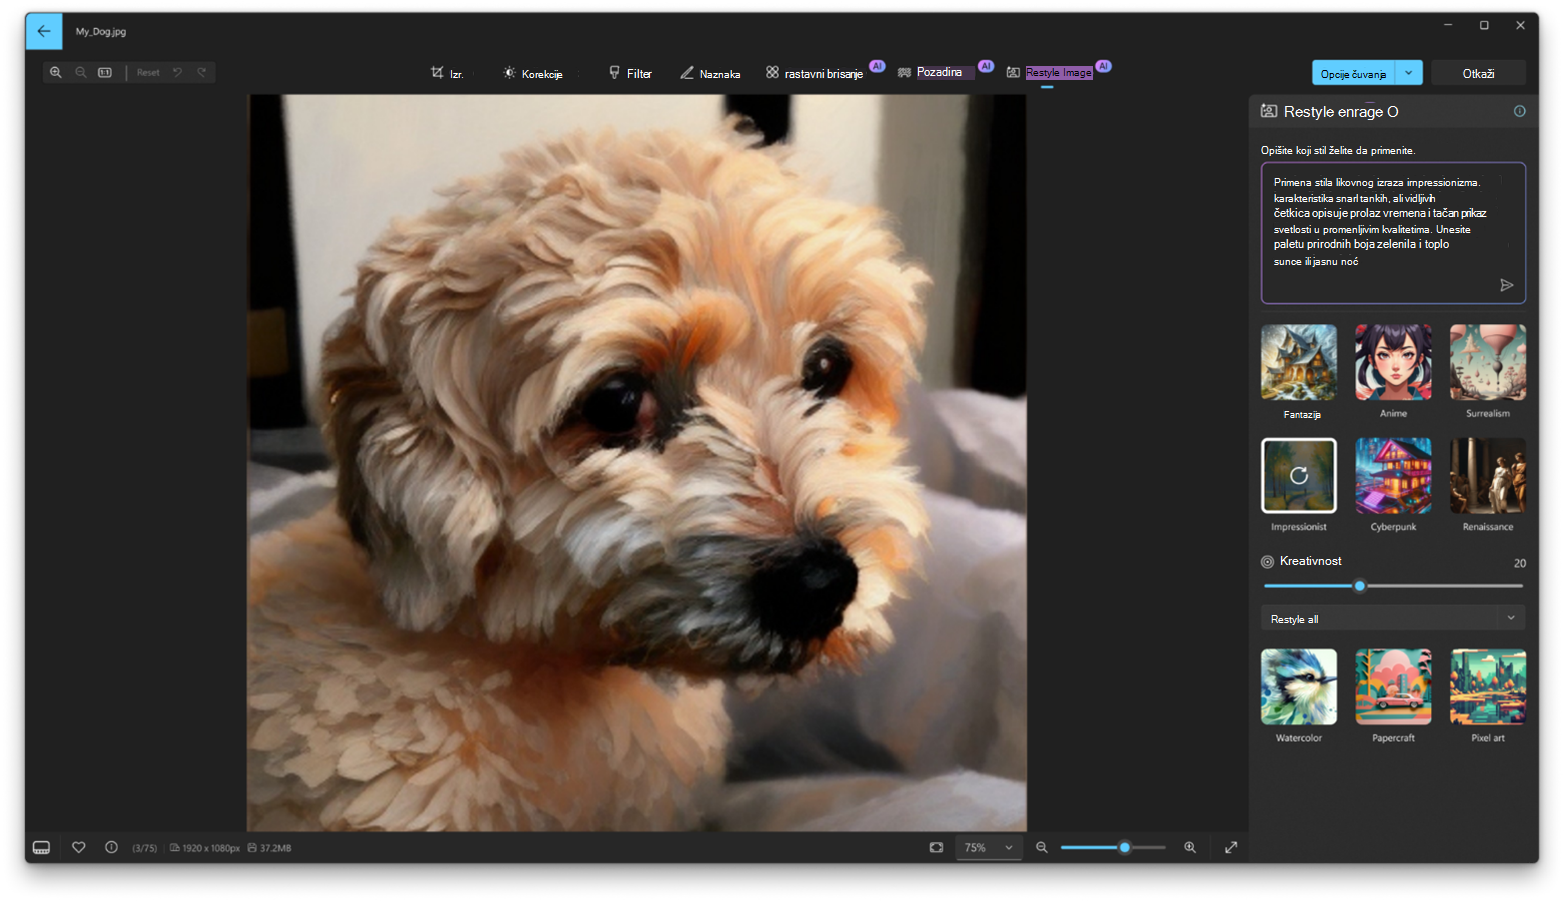 Snimak ekrana aplikacije "Windows fotografije" sa opcijom "Restyle Image" otvorenom u aplikaciji